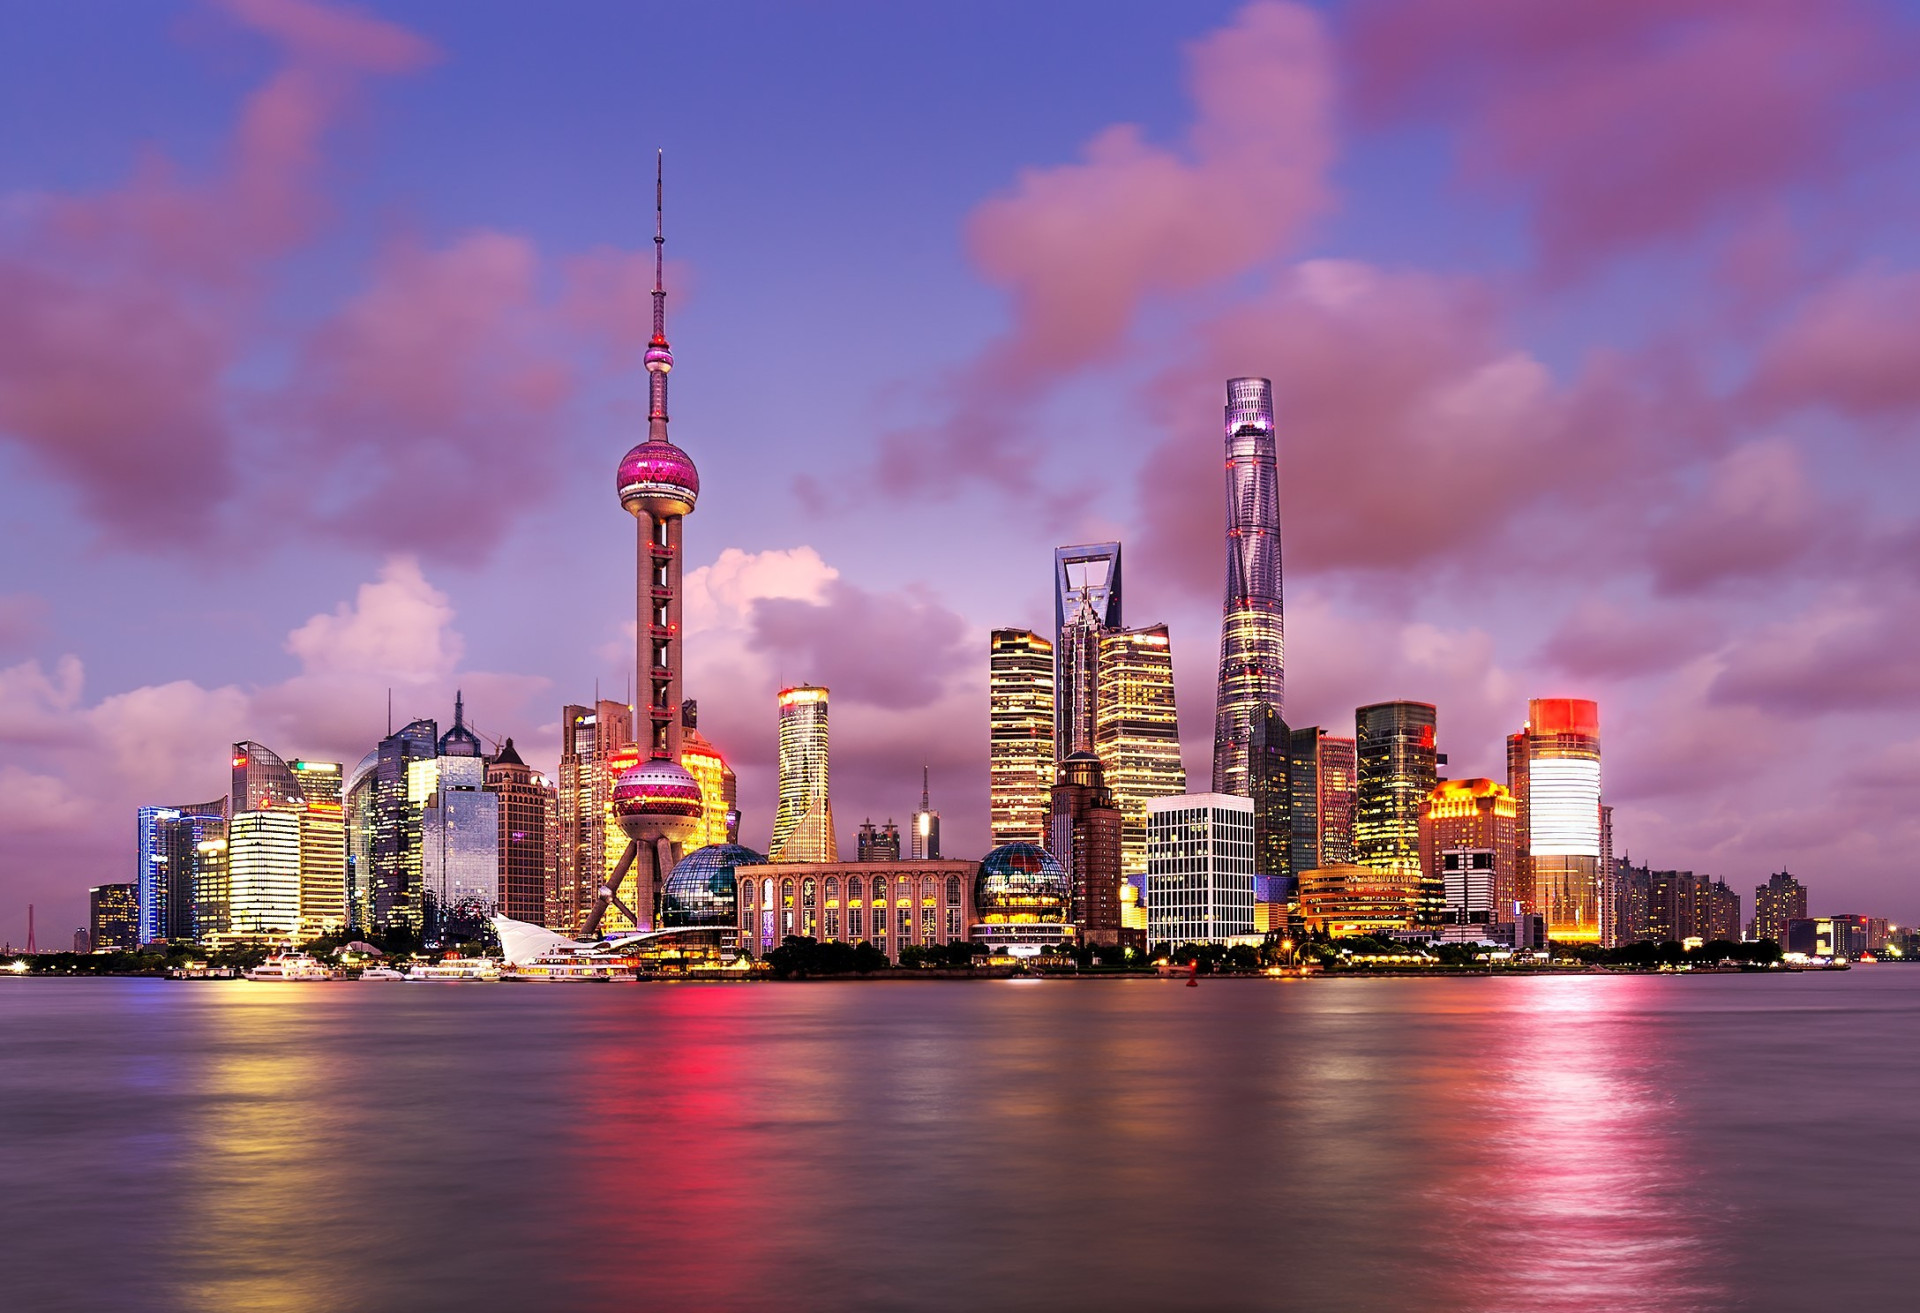 Shanghai est la ville la plus peuplée du monde, avec 24 millions d'habitants. Les plus beaux points de son paysage urbain sont les Shanghai Tower et l'immanquable Oriental Pearl Tower.<p>Tu pourrais aussi aimer:<a href="https://www.starsinsider.com/n/280213?utm_source=msn.com&utm_medium=display&utm_campaign=referral_description&utm_content=217079v3fr-ca"> Randonnée: les plus merveilleux sentiers du monde</a></p>